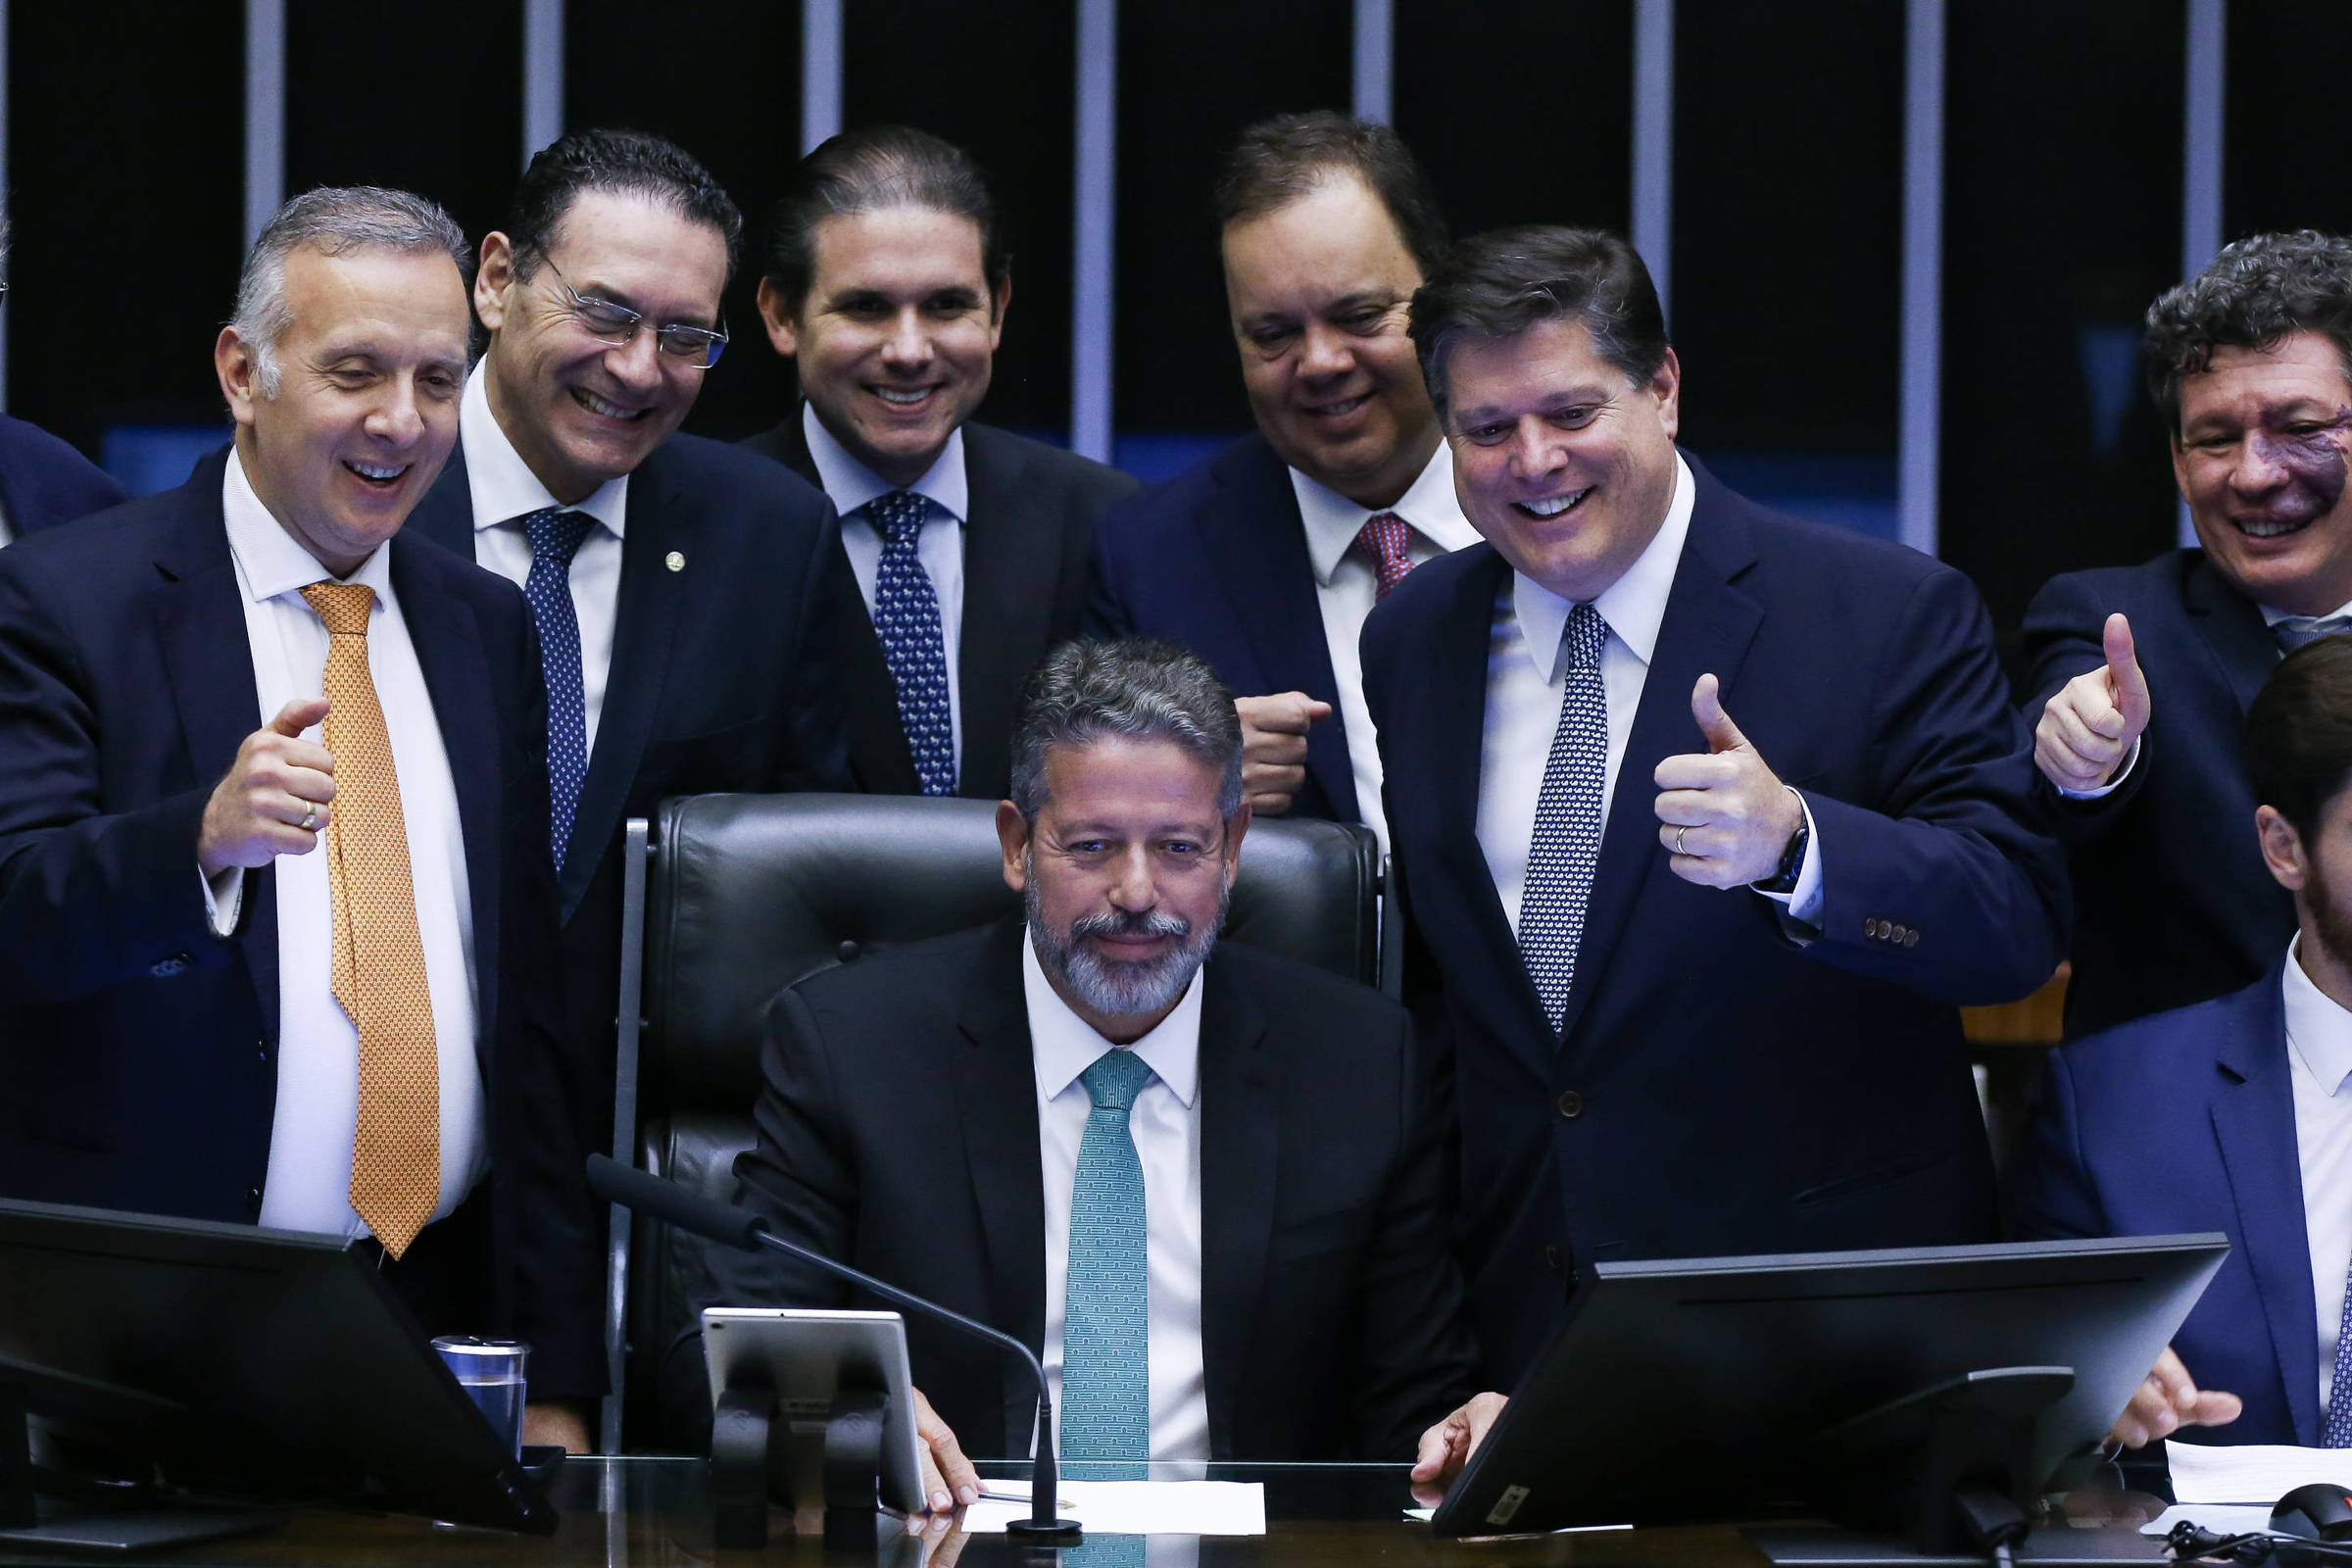 Bares Lula Livre fazem sucesso de público e de crítica. Confira o guia do  fim de semana - Comitê Nacional Lula Livre